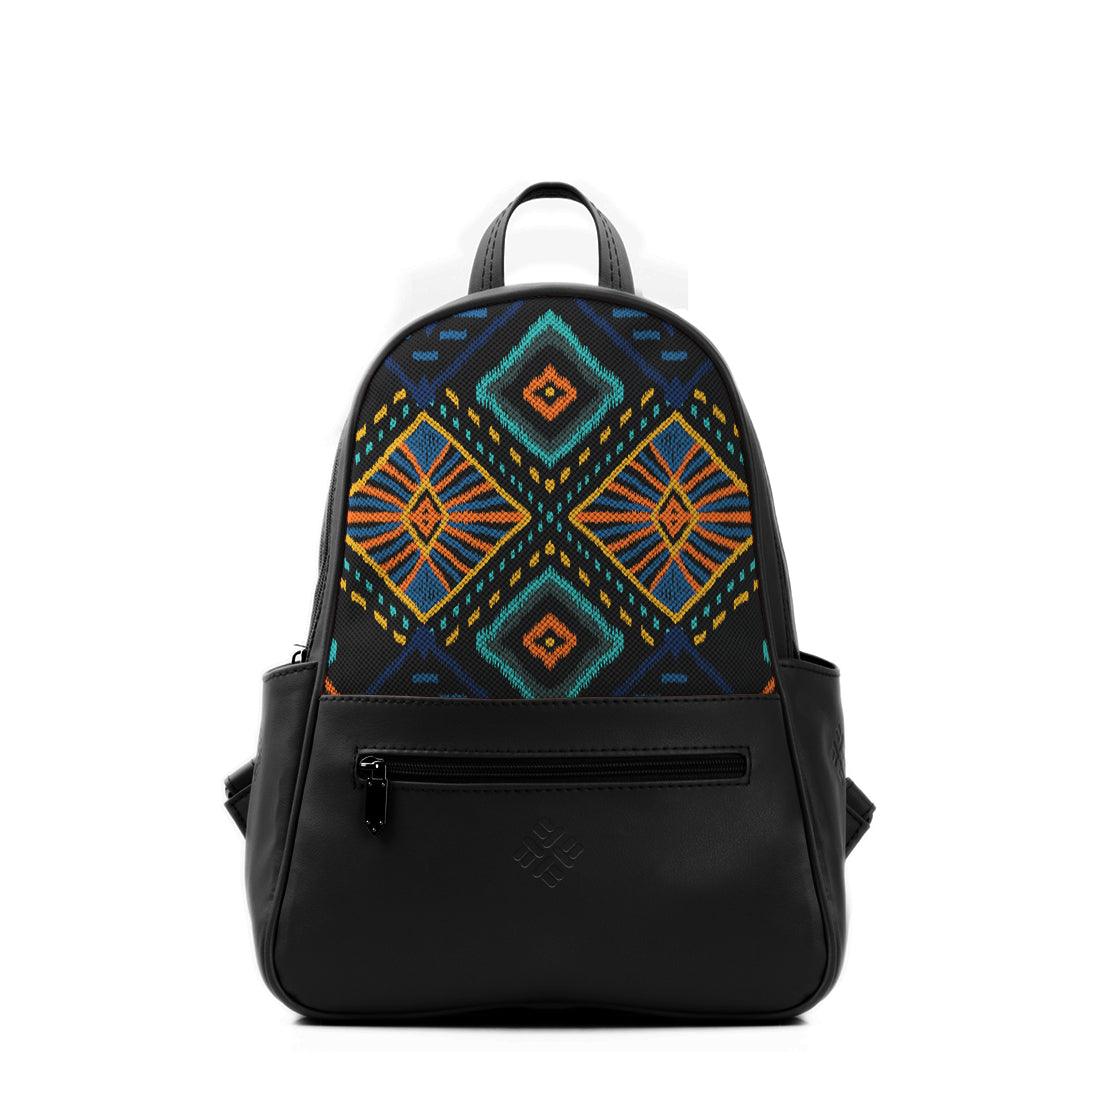 Black Vivid Backpack Lighten Linen - CANVAEGYPT